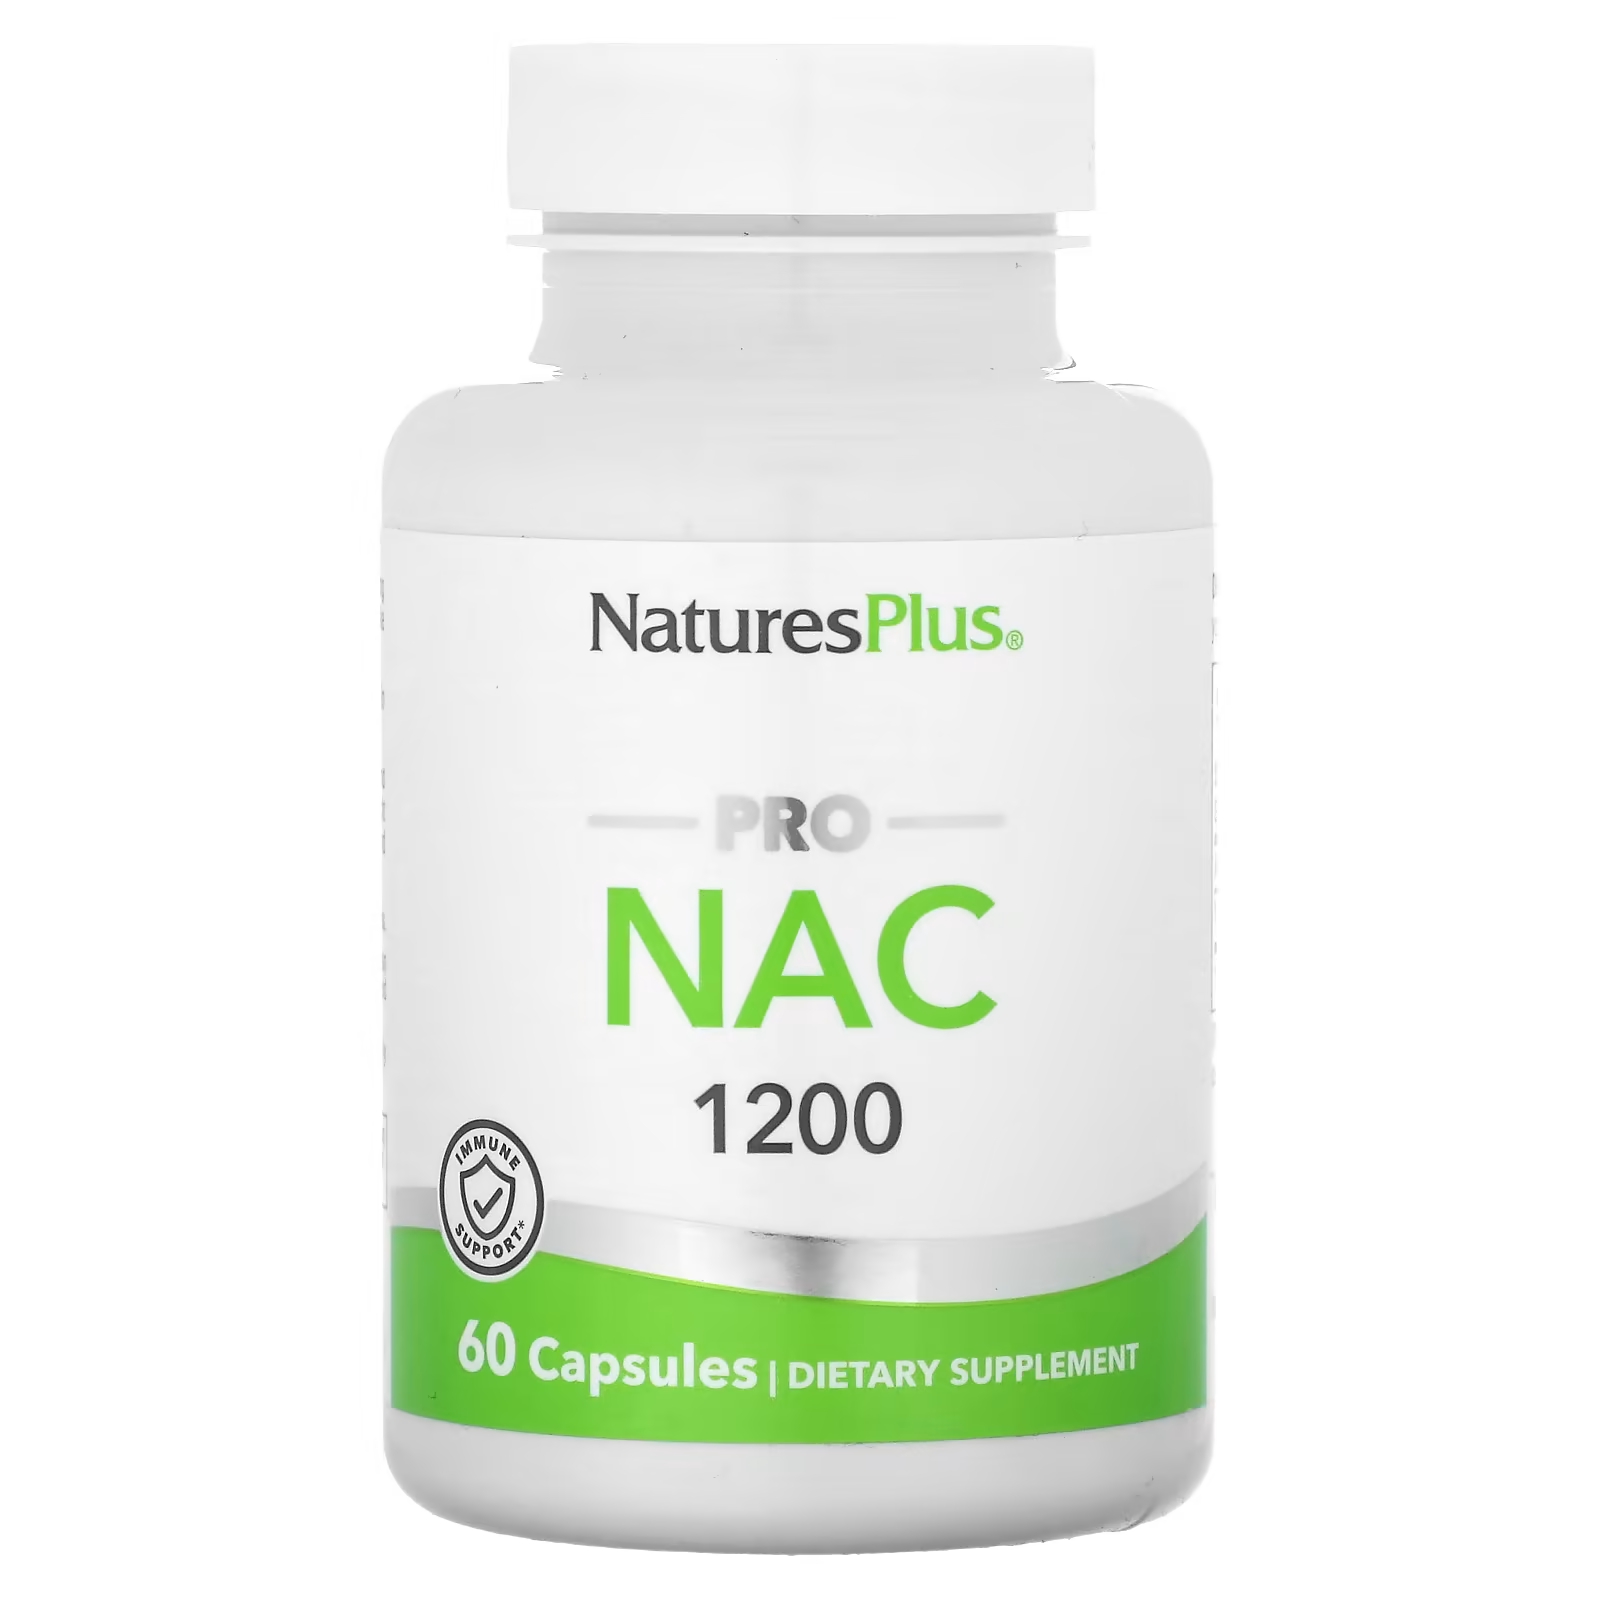 Пищевая добавка NaturesPlus Pro NAC 1200, 60 капсул цена и фото